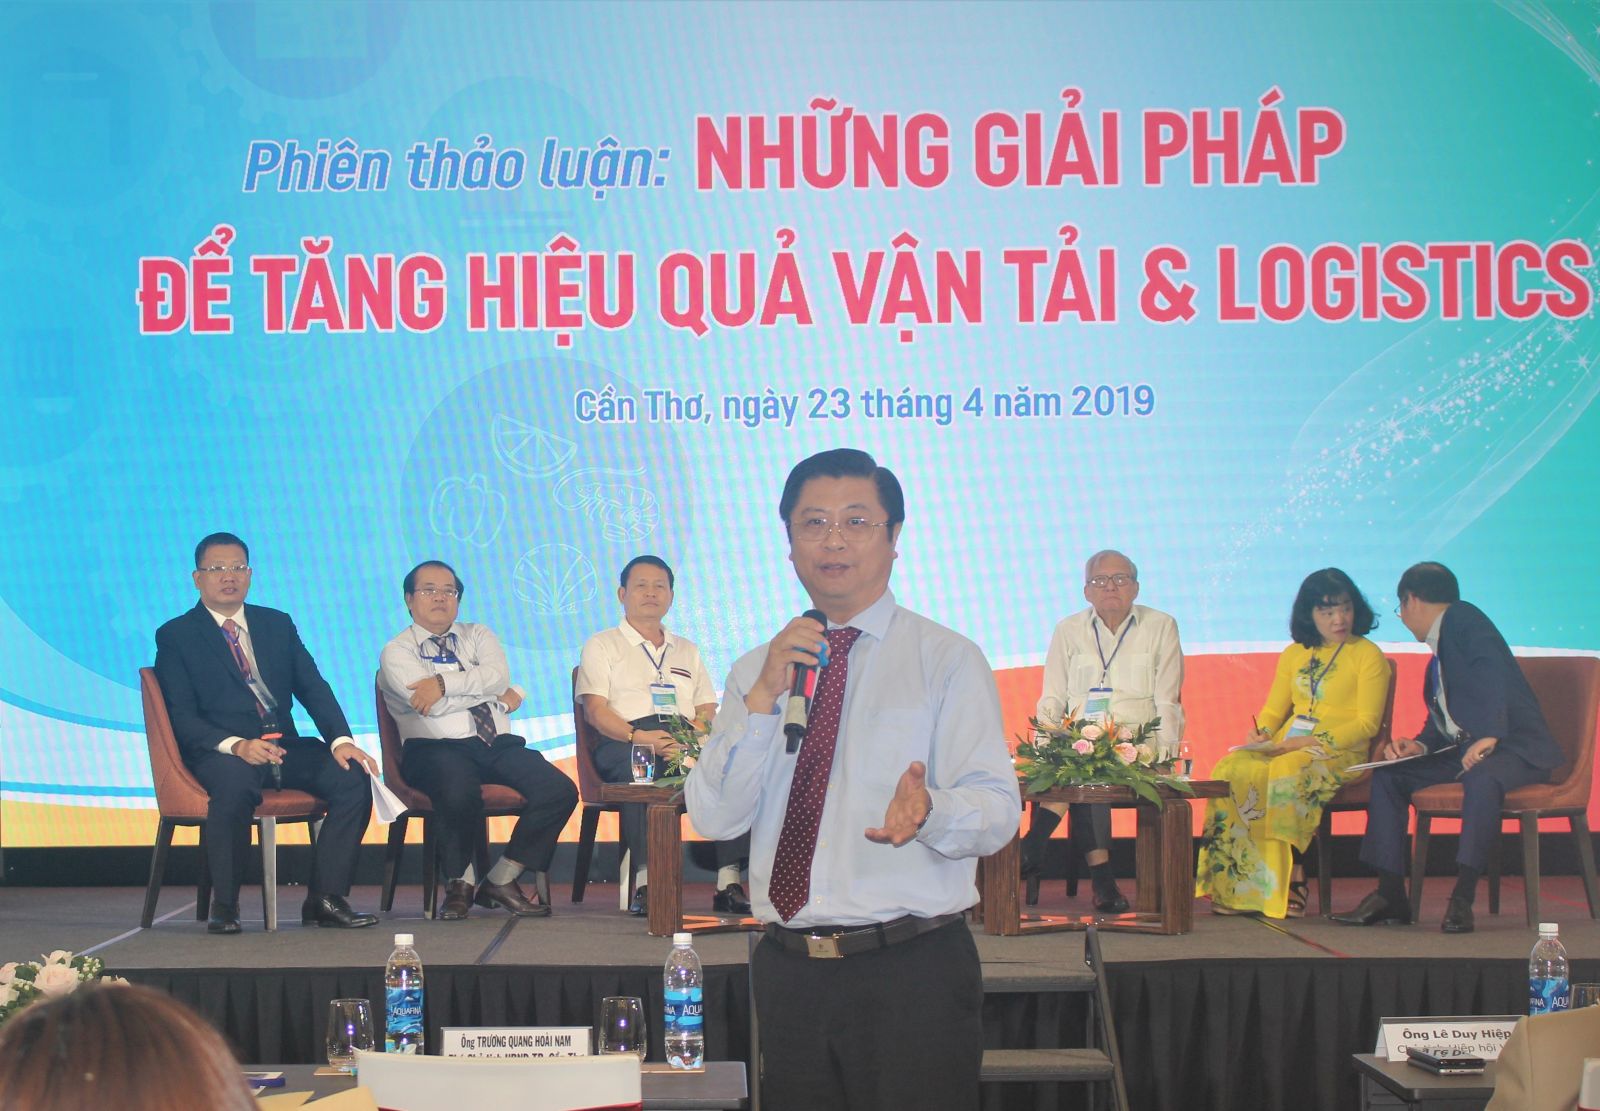 Phó Chủ tịch UBND TP Cần Thơ Trương Quang Hoài Nam trình bày về những cơ chế hỗ trợ đối với các doanh nghiệp có nhu cầu đầu tư vào lĩnh vực logistics tại TP Cần Thơ. Ảnh: MINH HUYỀN 